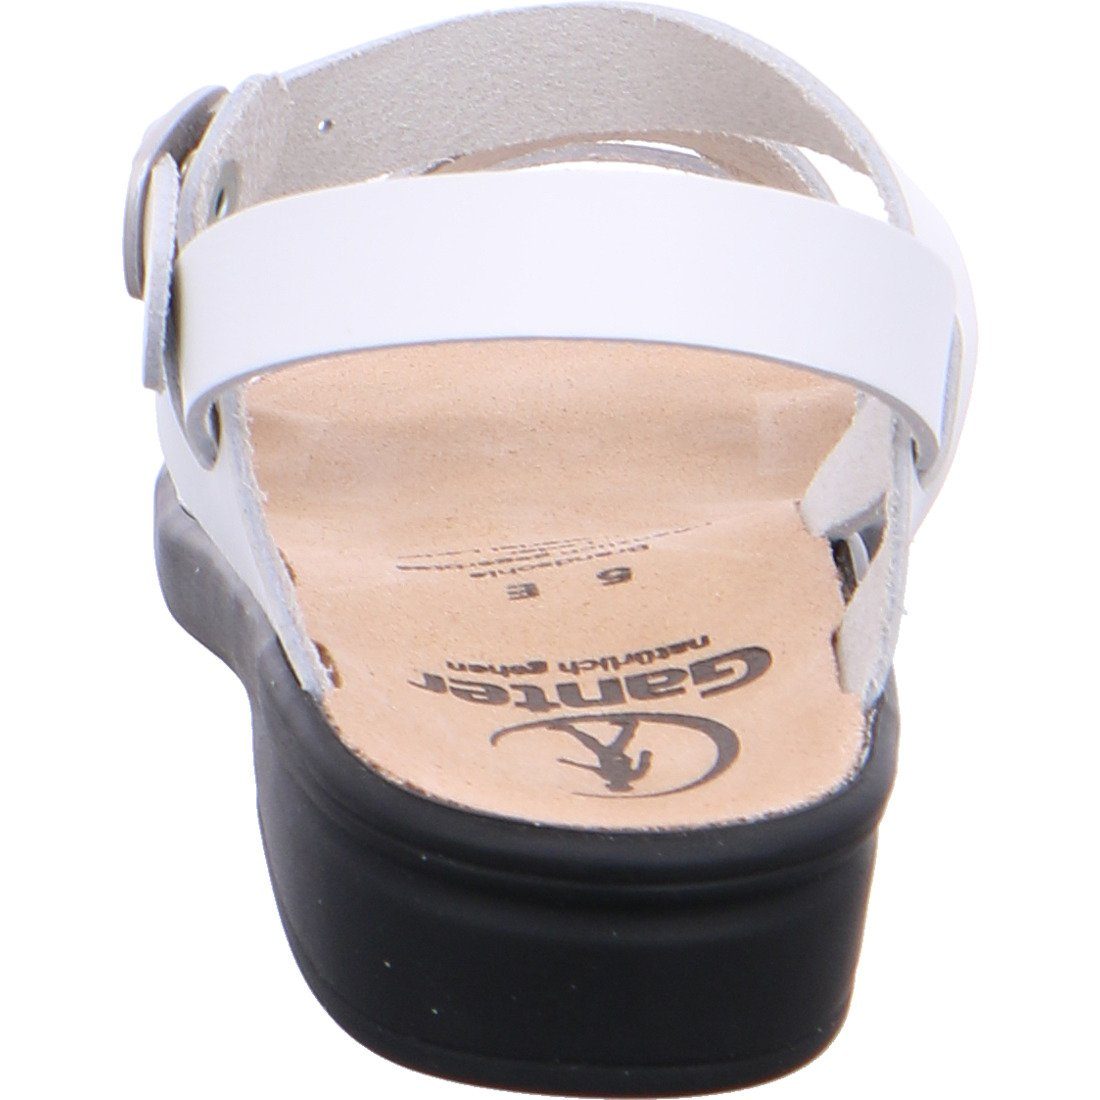 Ganter Ganter Schuhe, Sandalette Sonnica Damen weiß 033403 Leder - Sandalette